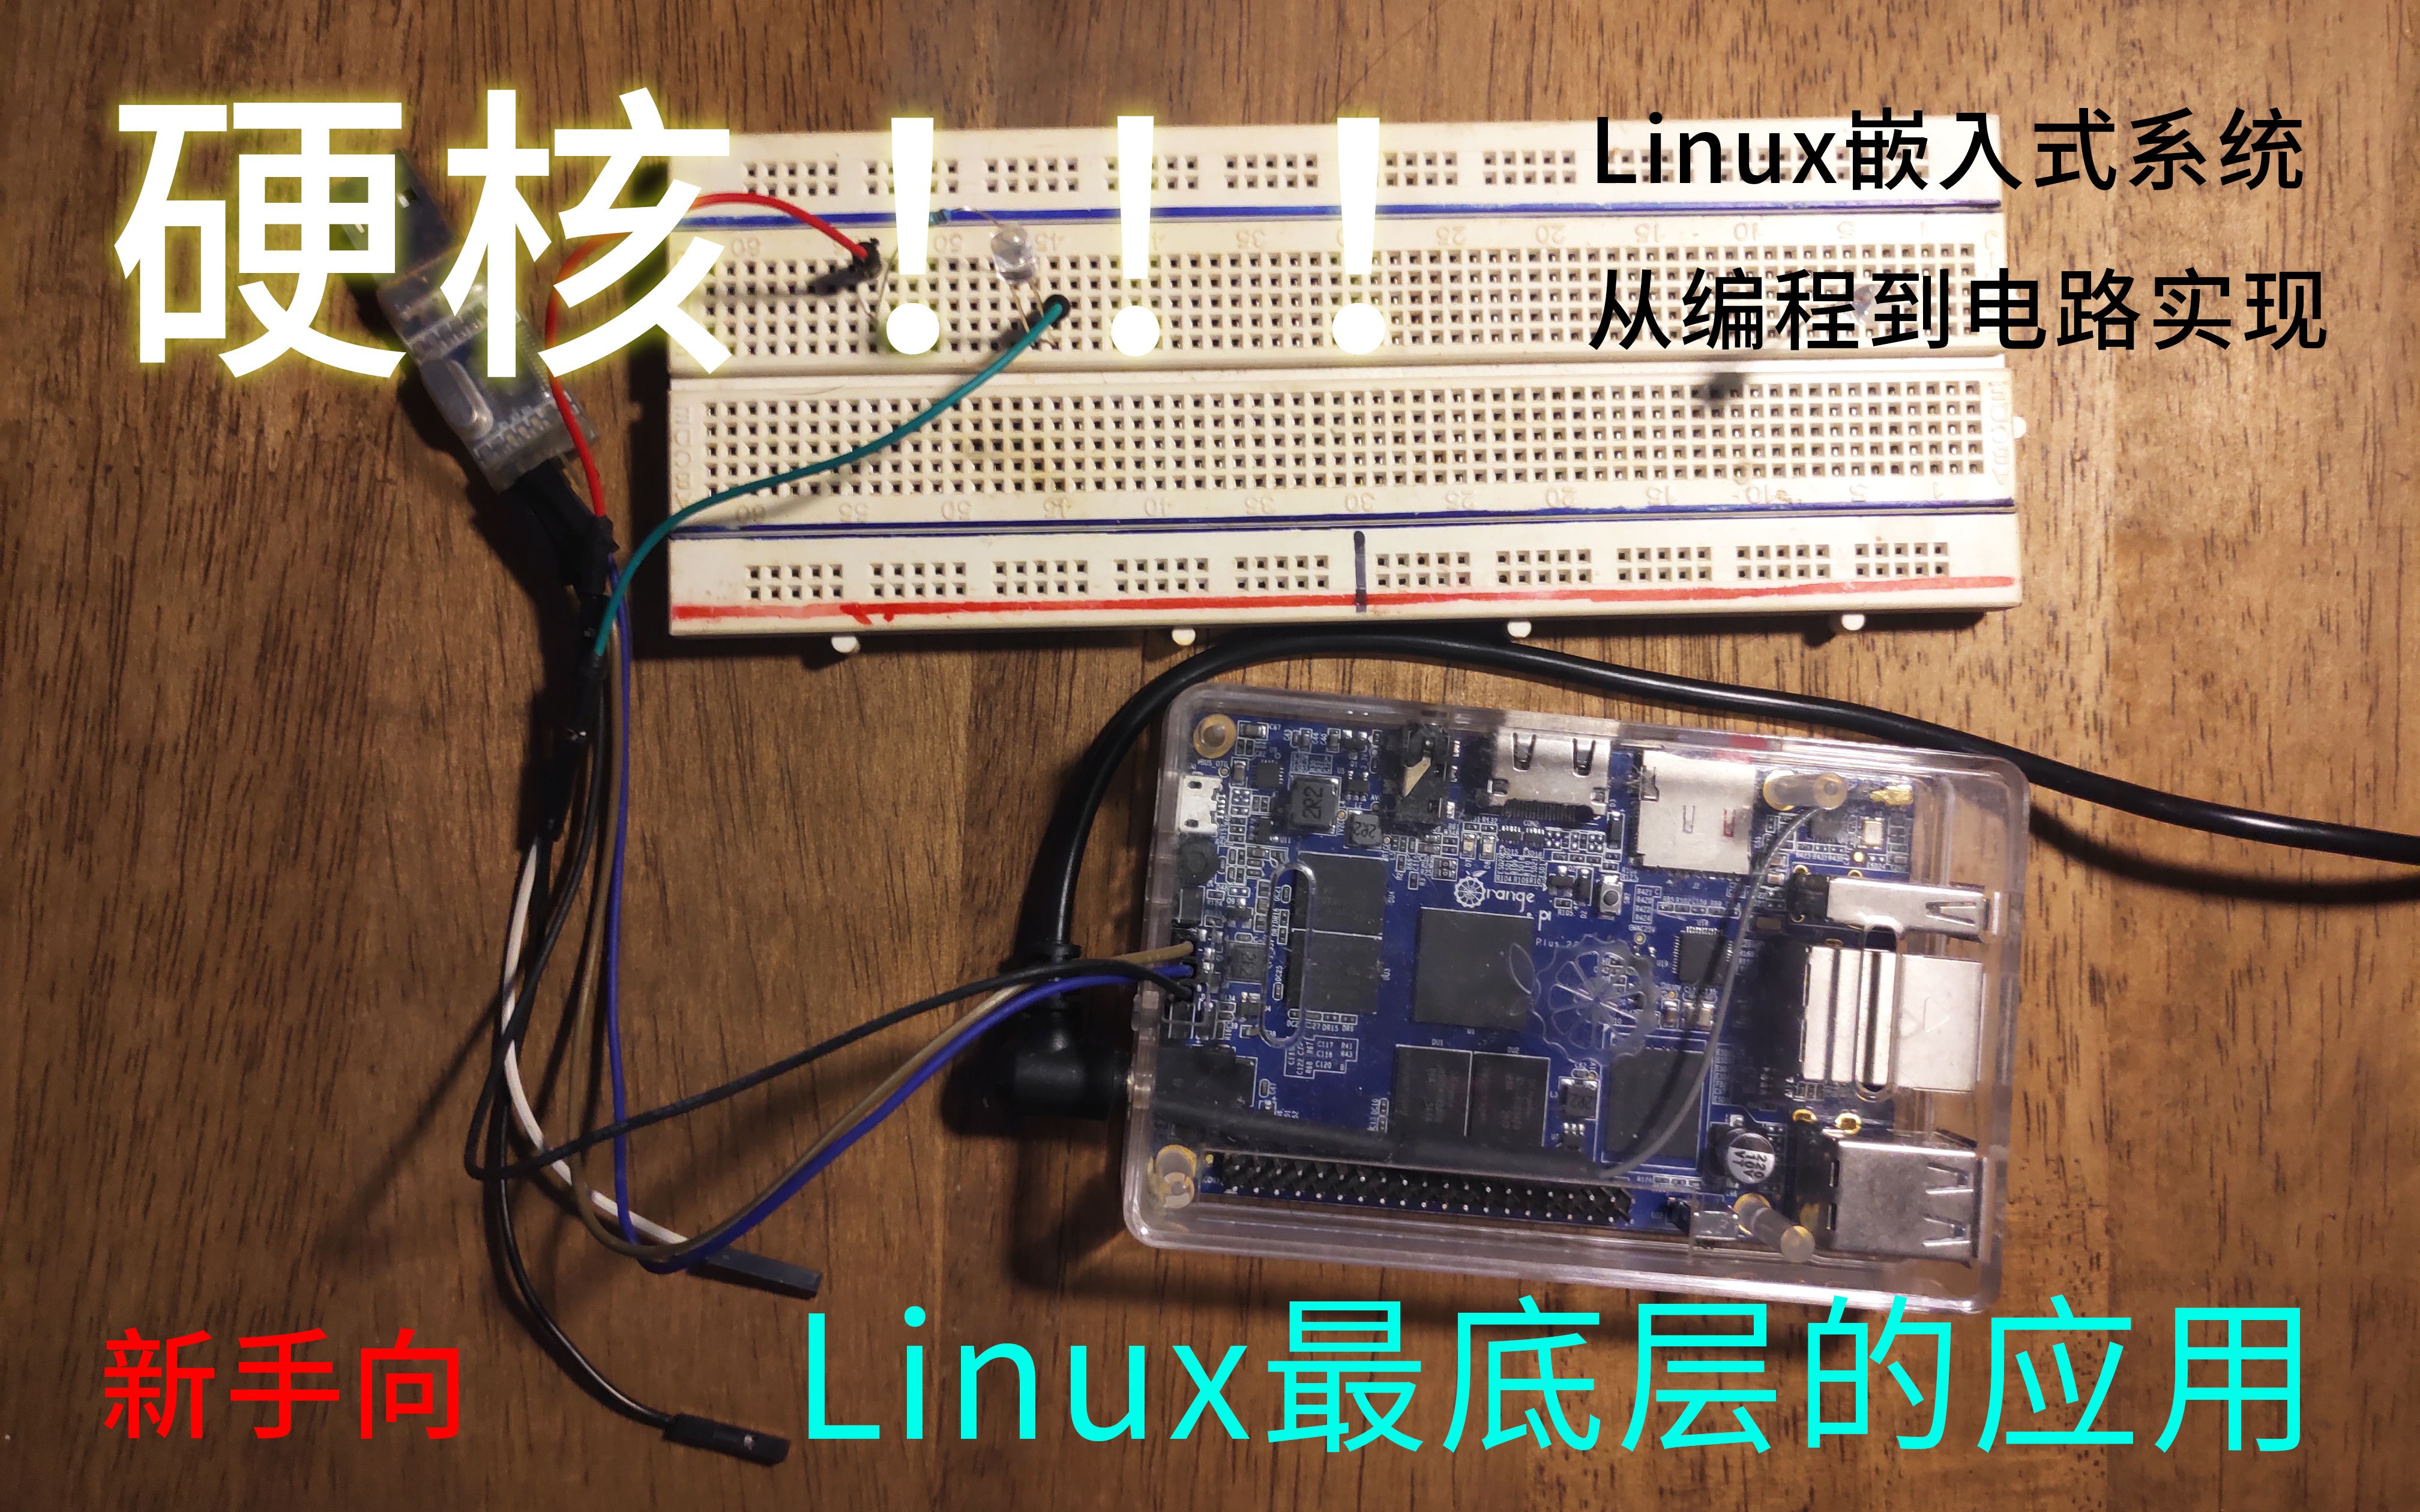 Linux有什么用？从编程到电路实现的硬核操作过程！